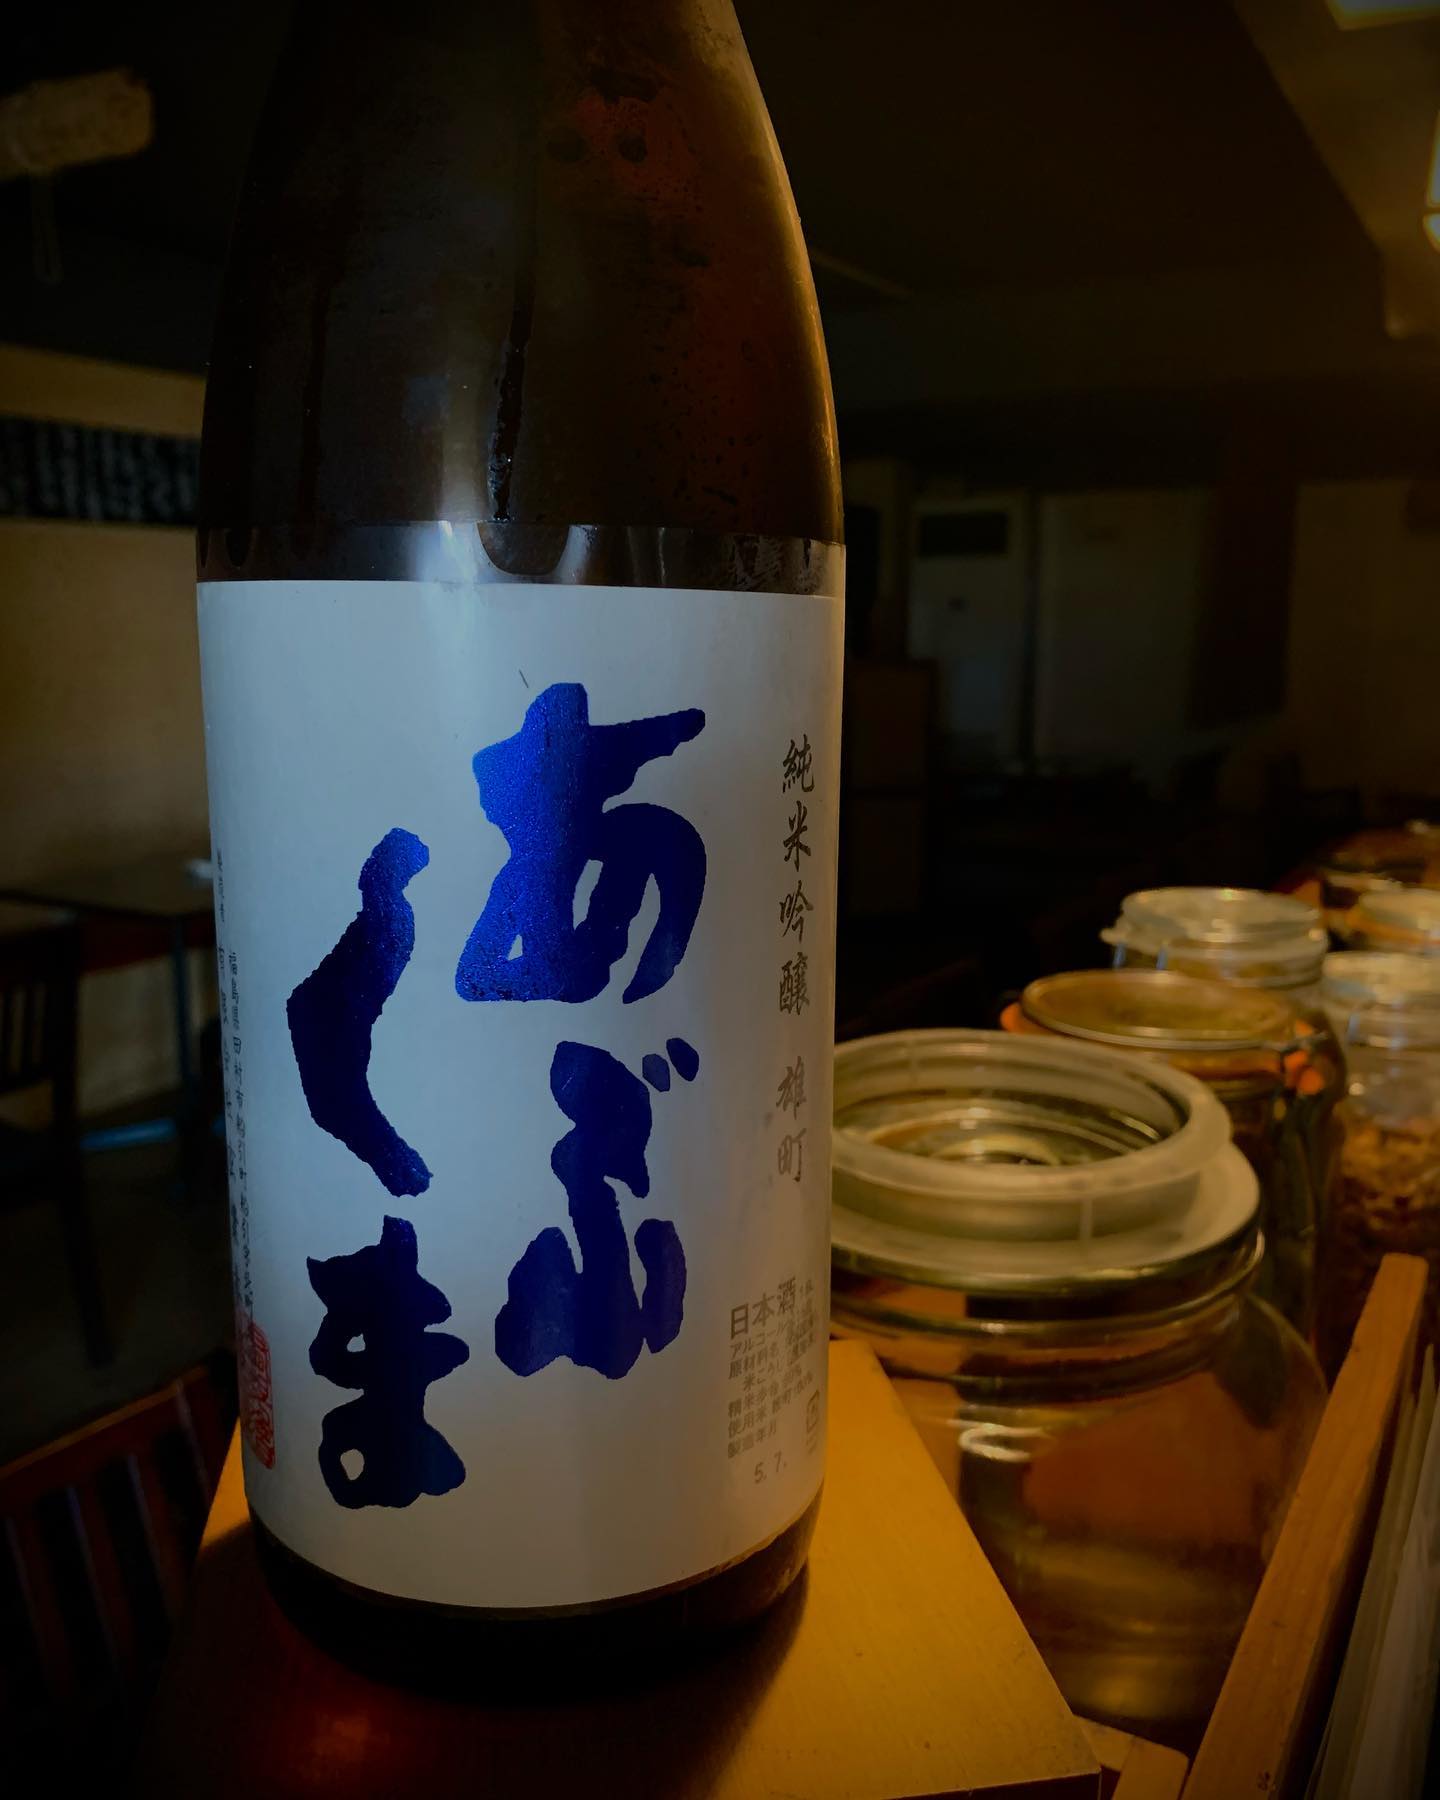 本日の日本酒紹介
｢あぶくま｣

福島県の日本酒で
開けたてはミネラル感もあり、
ややシャープな味わい。
少し時間を置くと、
じわじわと柔らかでジューシーな旨味が出てきます。
あぶくまならではの仕掛け。
時間とともに変化する旨味をお楽しみください。
 #